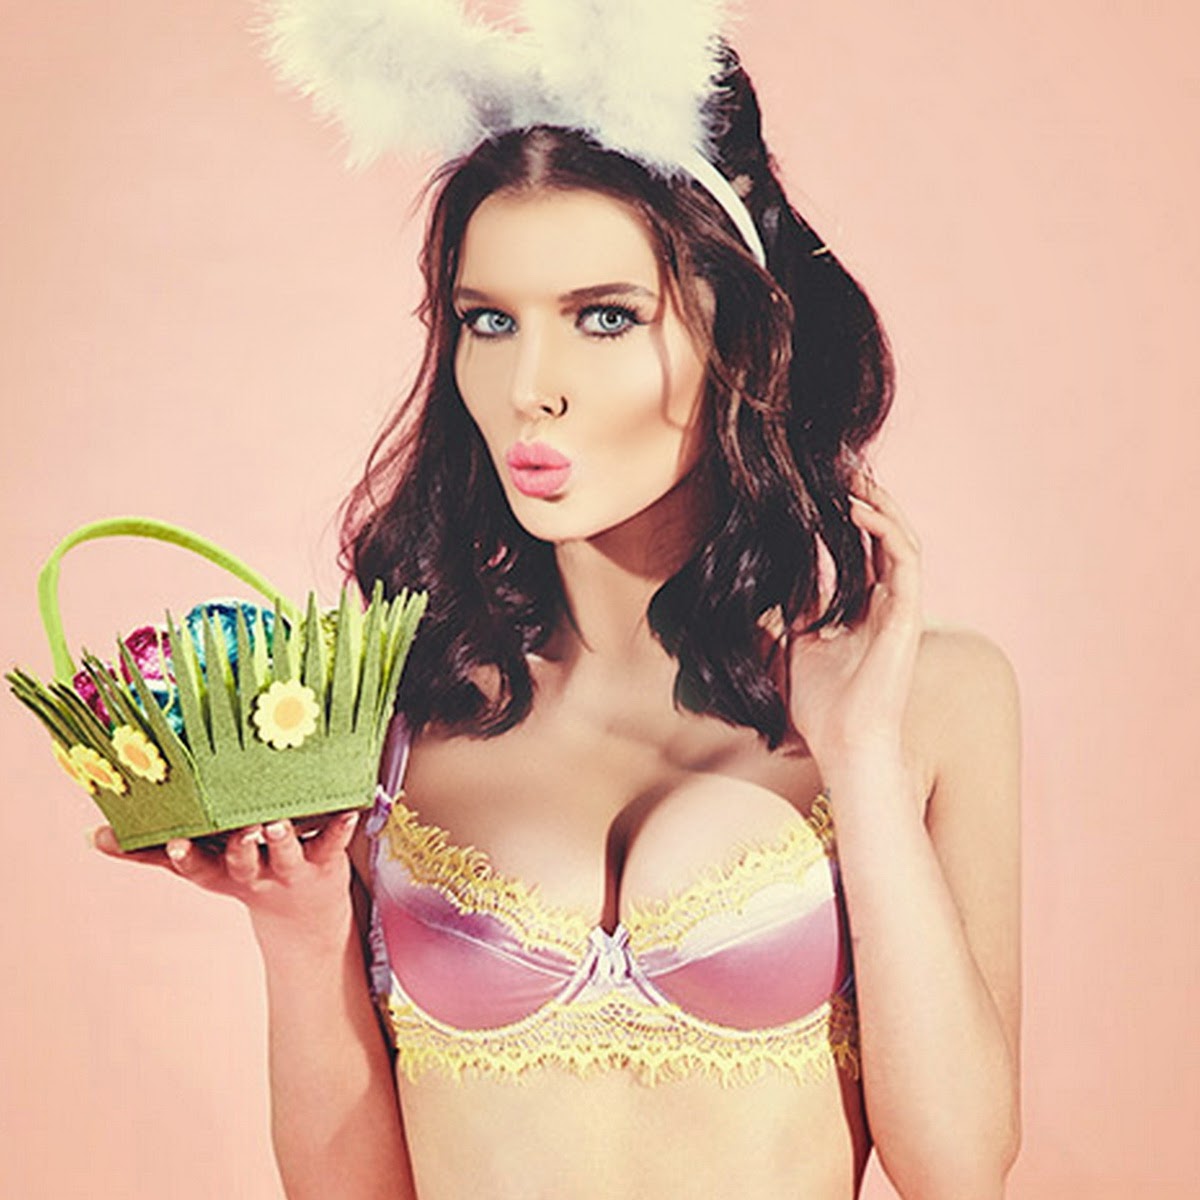 Easter Hot Celebrity. 